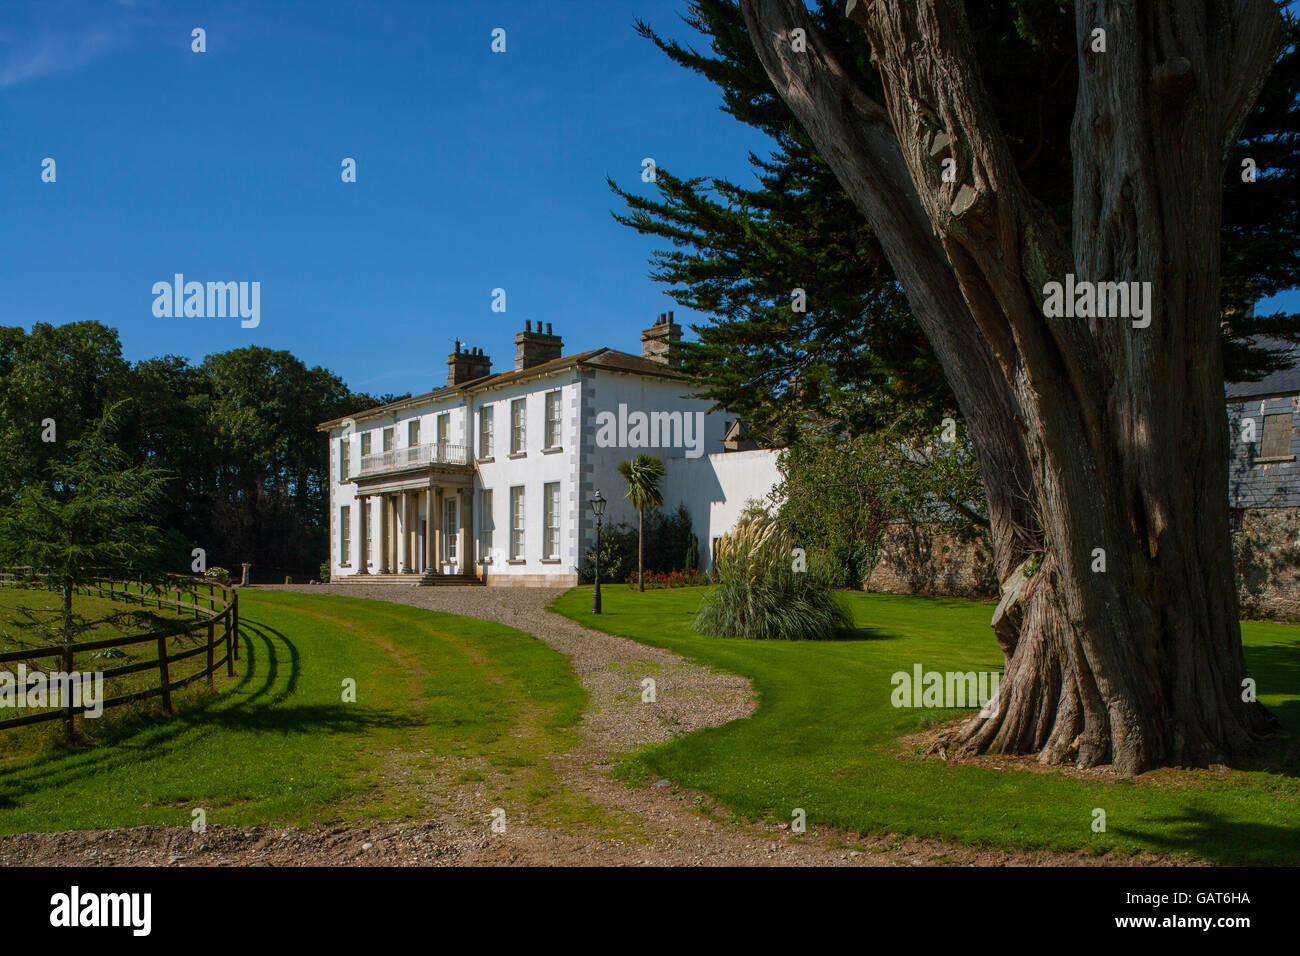 Palladio-Stil englischer britische großen Landhaus Stockfoto